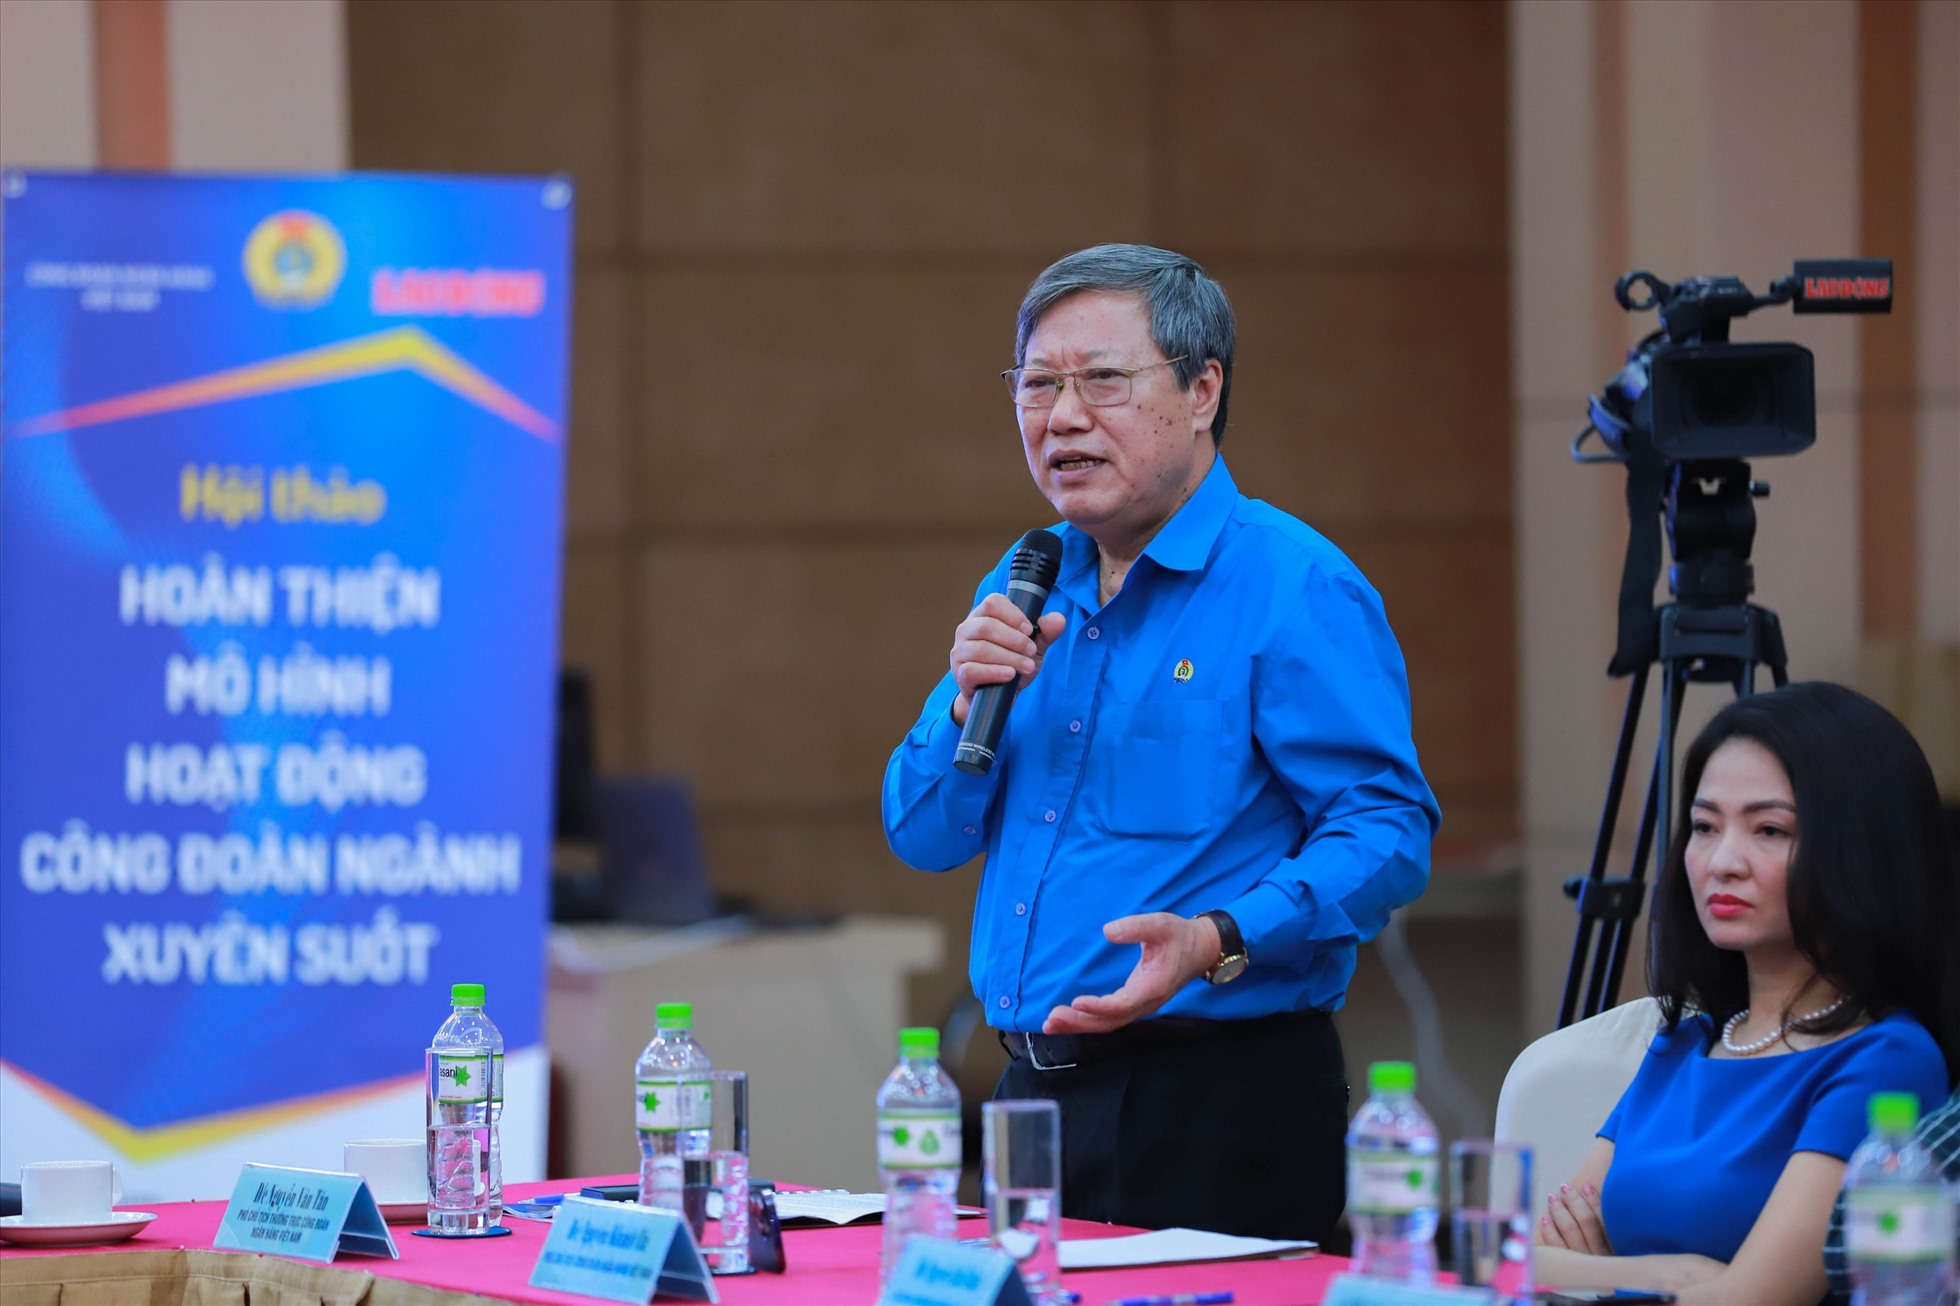 Ông Nguyễn Văn Tân - Phó Chủ tịch Thường trực Công đoàn Ngân hàng Việt Nam báo cáo “Nhìn lại hiệu quả mô hình hoạt động công đoàn ngành xuyên suốt trong ngành ngân hàng“.